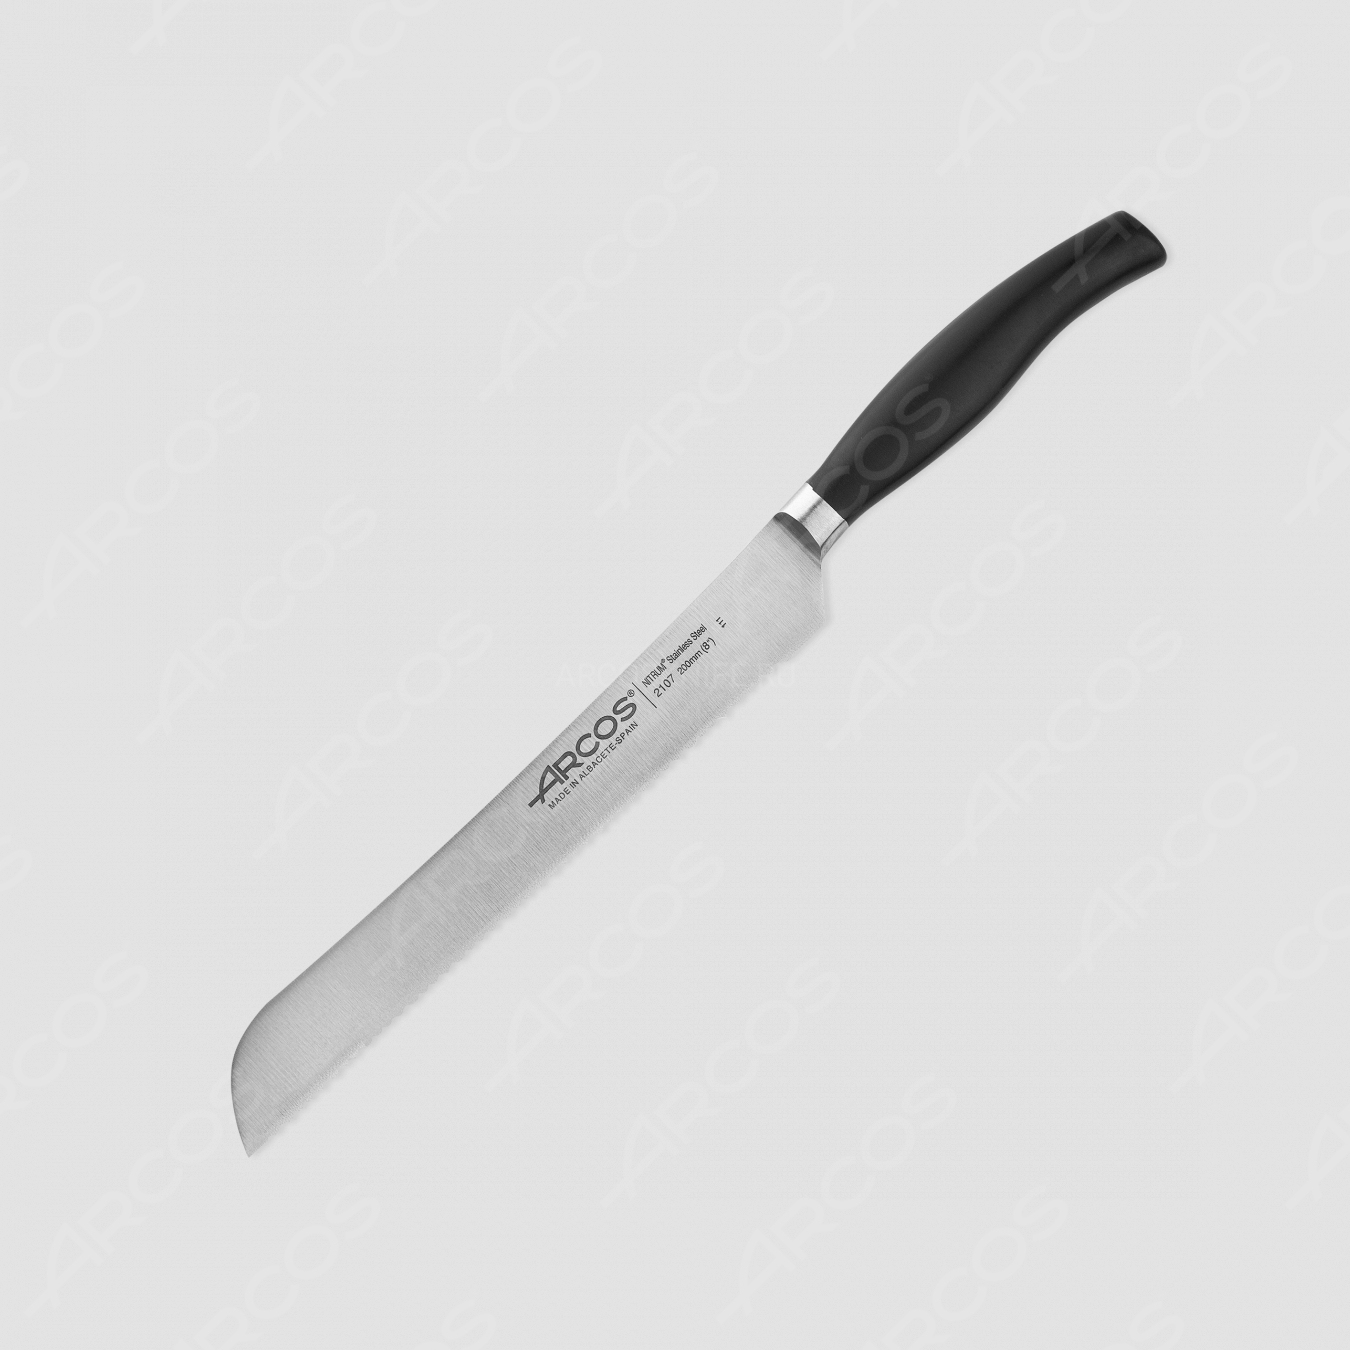 Нож кухонный для хлеба, 20 см, серия Clara, ARCOS, Испания